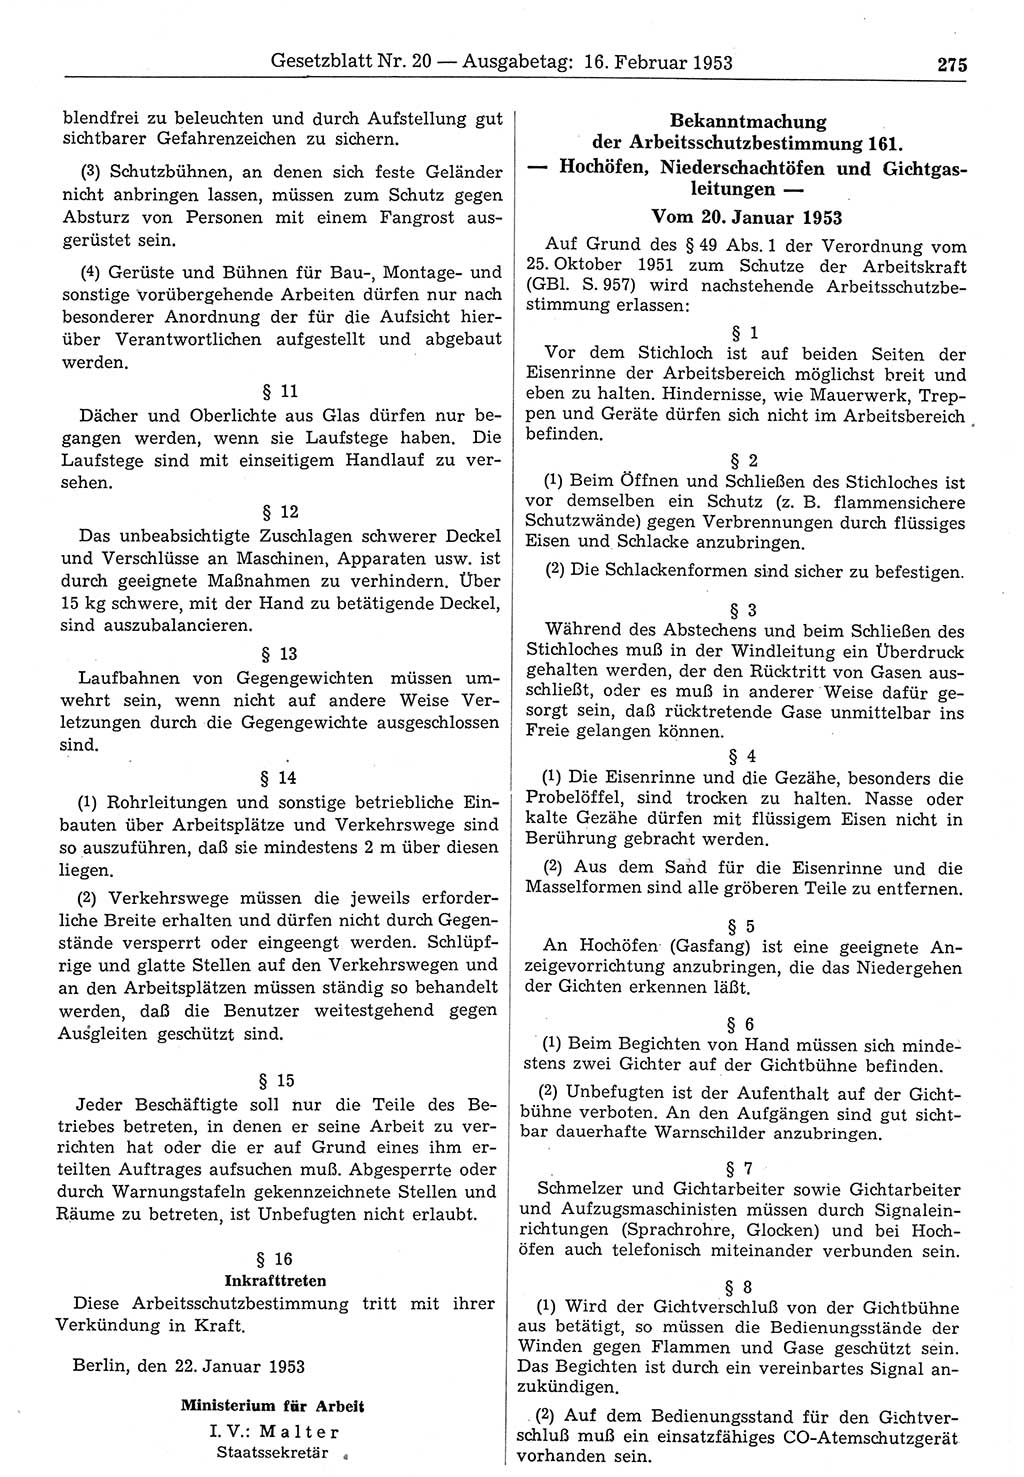 Gesetzblatt (GBl.) der Deutschen Demokratischen Republik (DDR) 1953, Seite 275 (GBl. DDR 1953, S. 275)